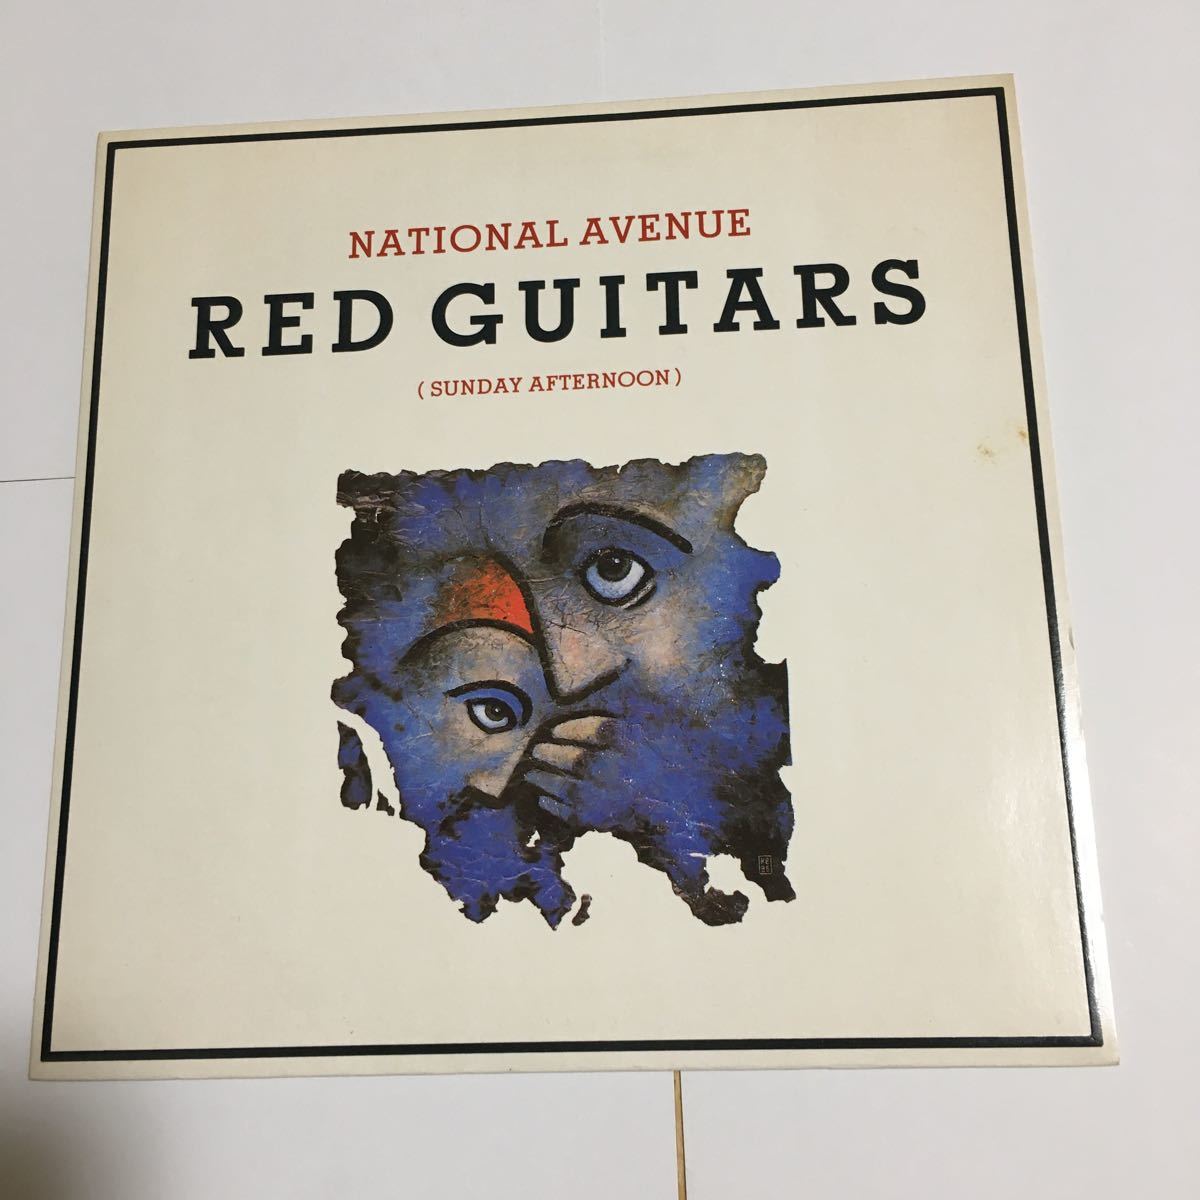 貴重シングル 7” RED GUITARS レッド・ギターズ NATIONAL AVENUE (SUNDAY AFTERNOON) KING AND COUNTRY 1986 VIRGIN RECORDS 輸入盤 _画像1